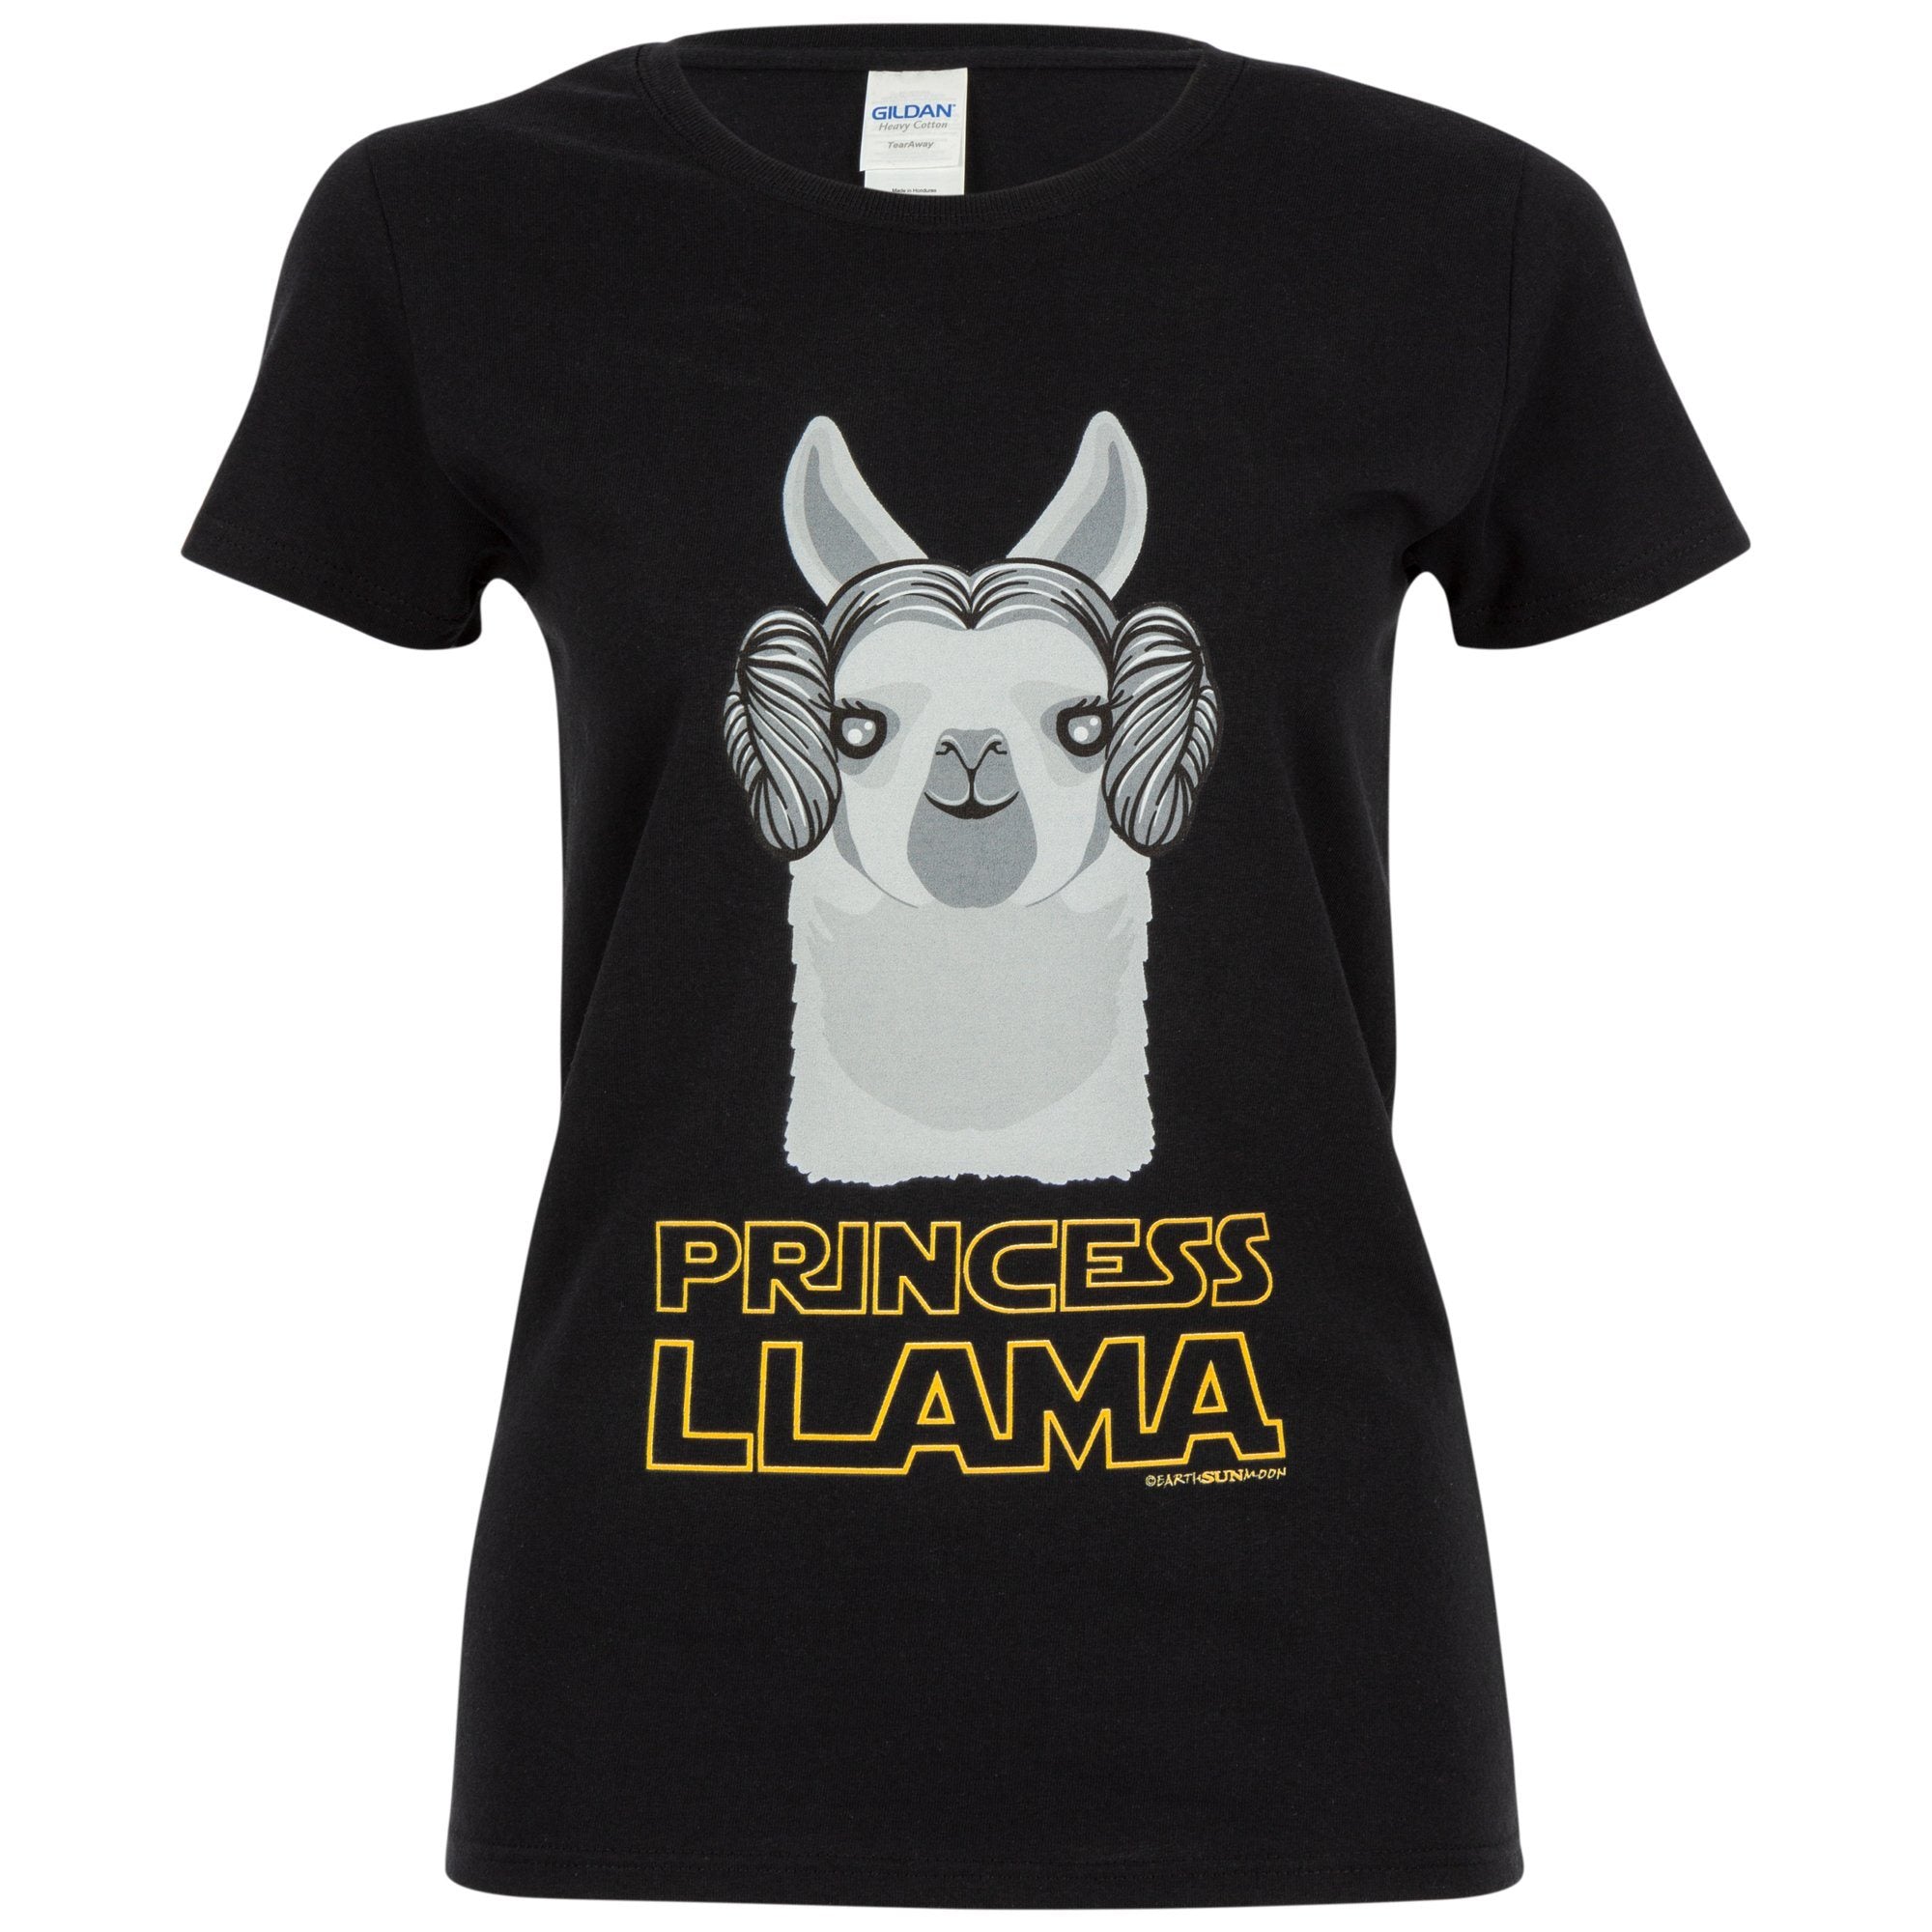 Princess Llama Tee - L